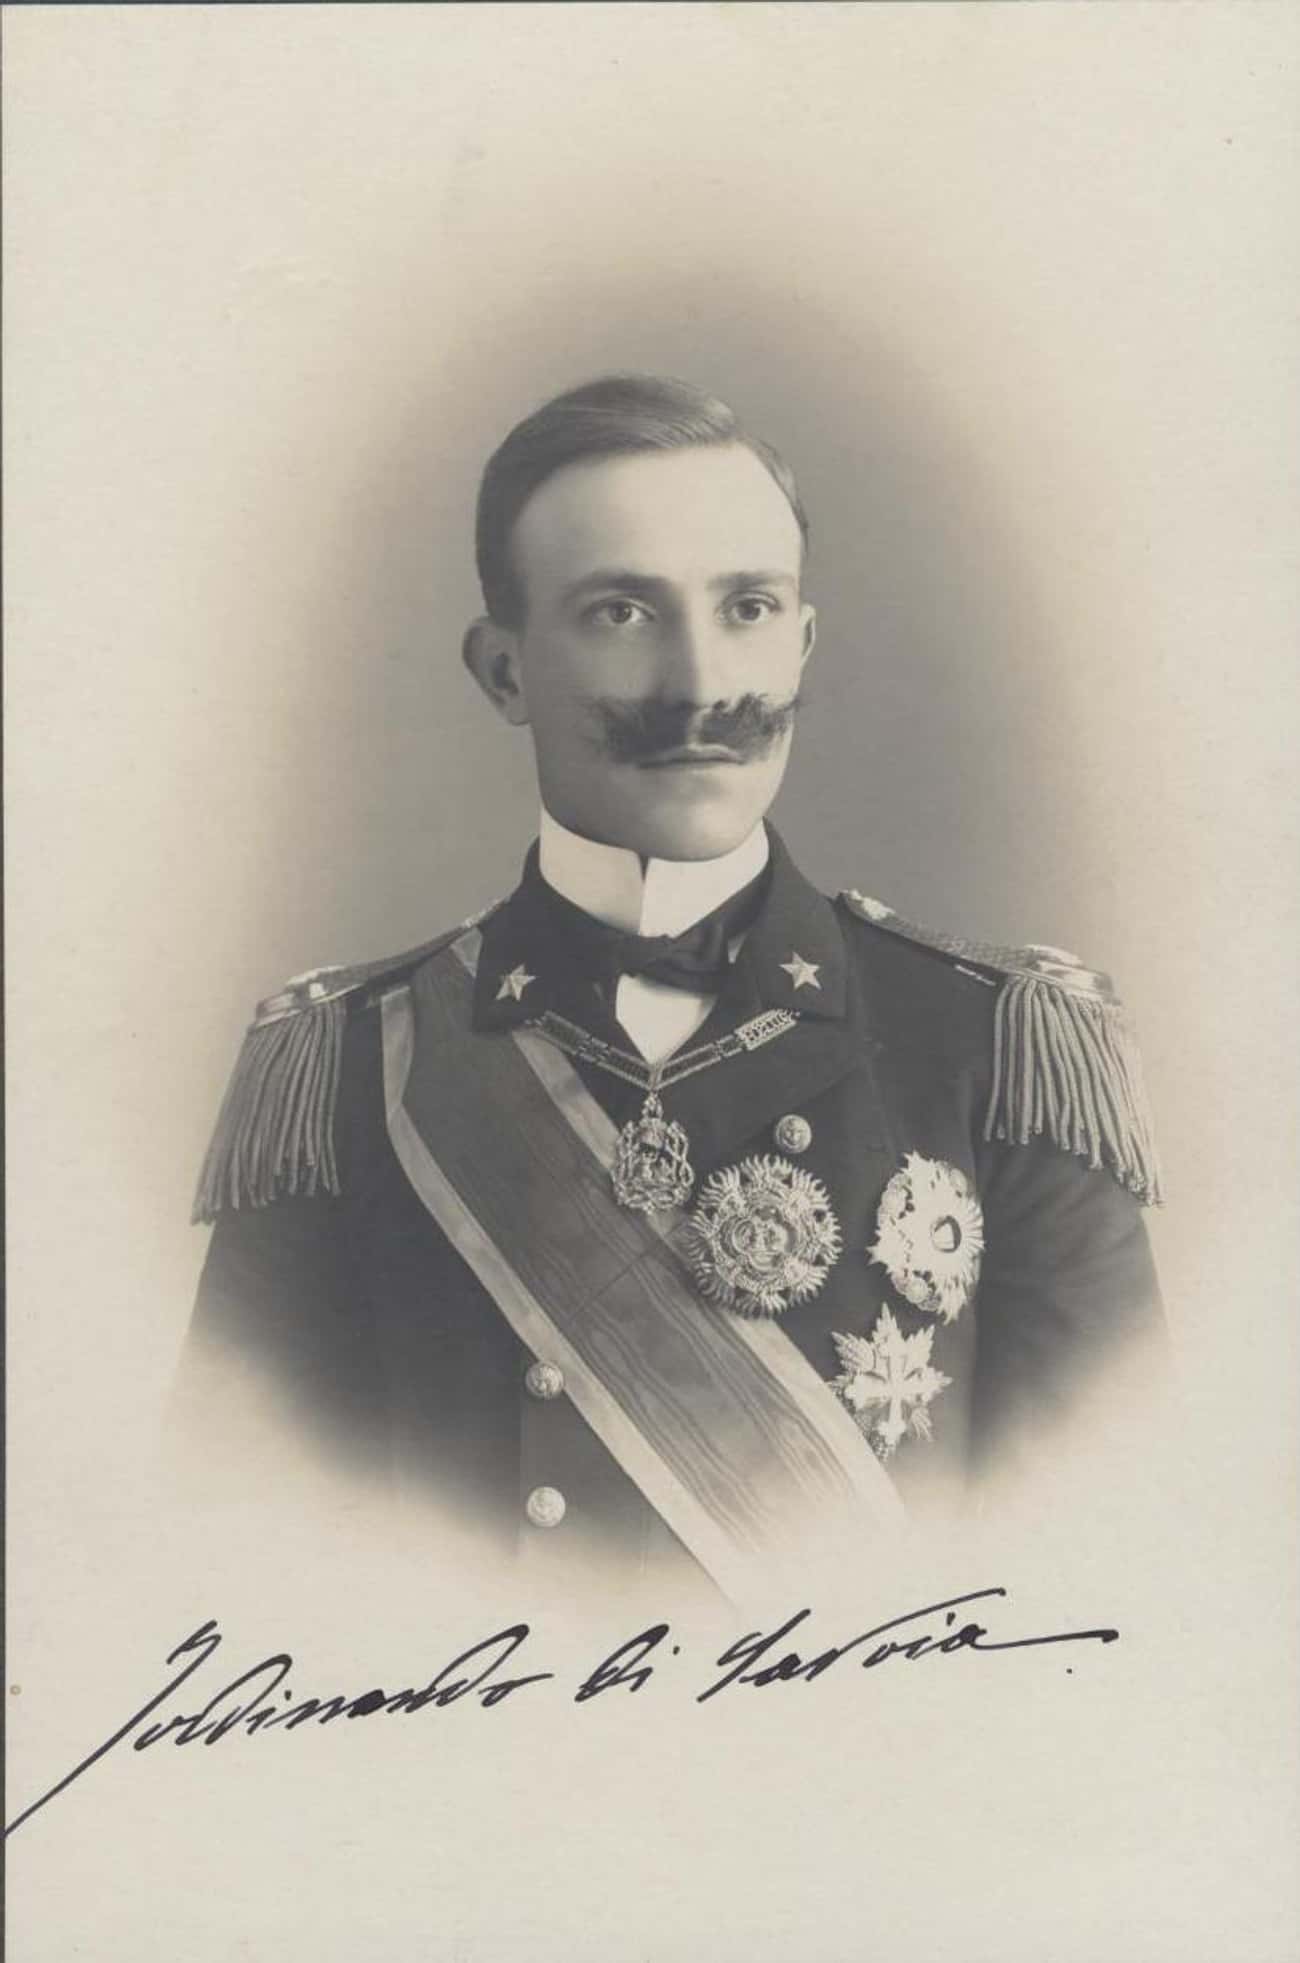 Prince Ferdinando, Duke of Genoa